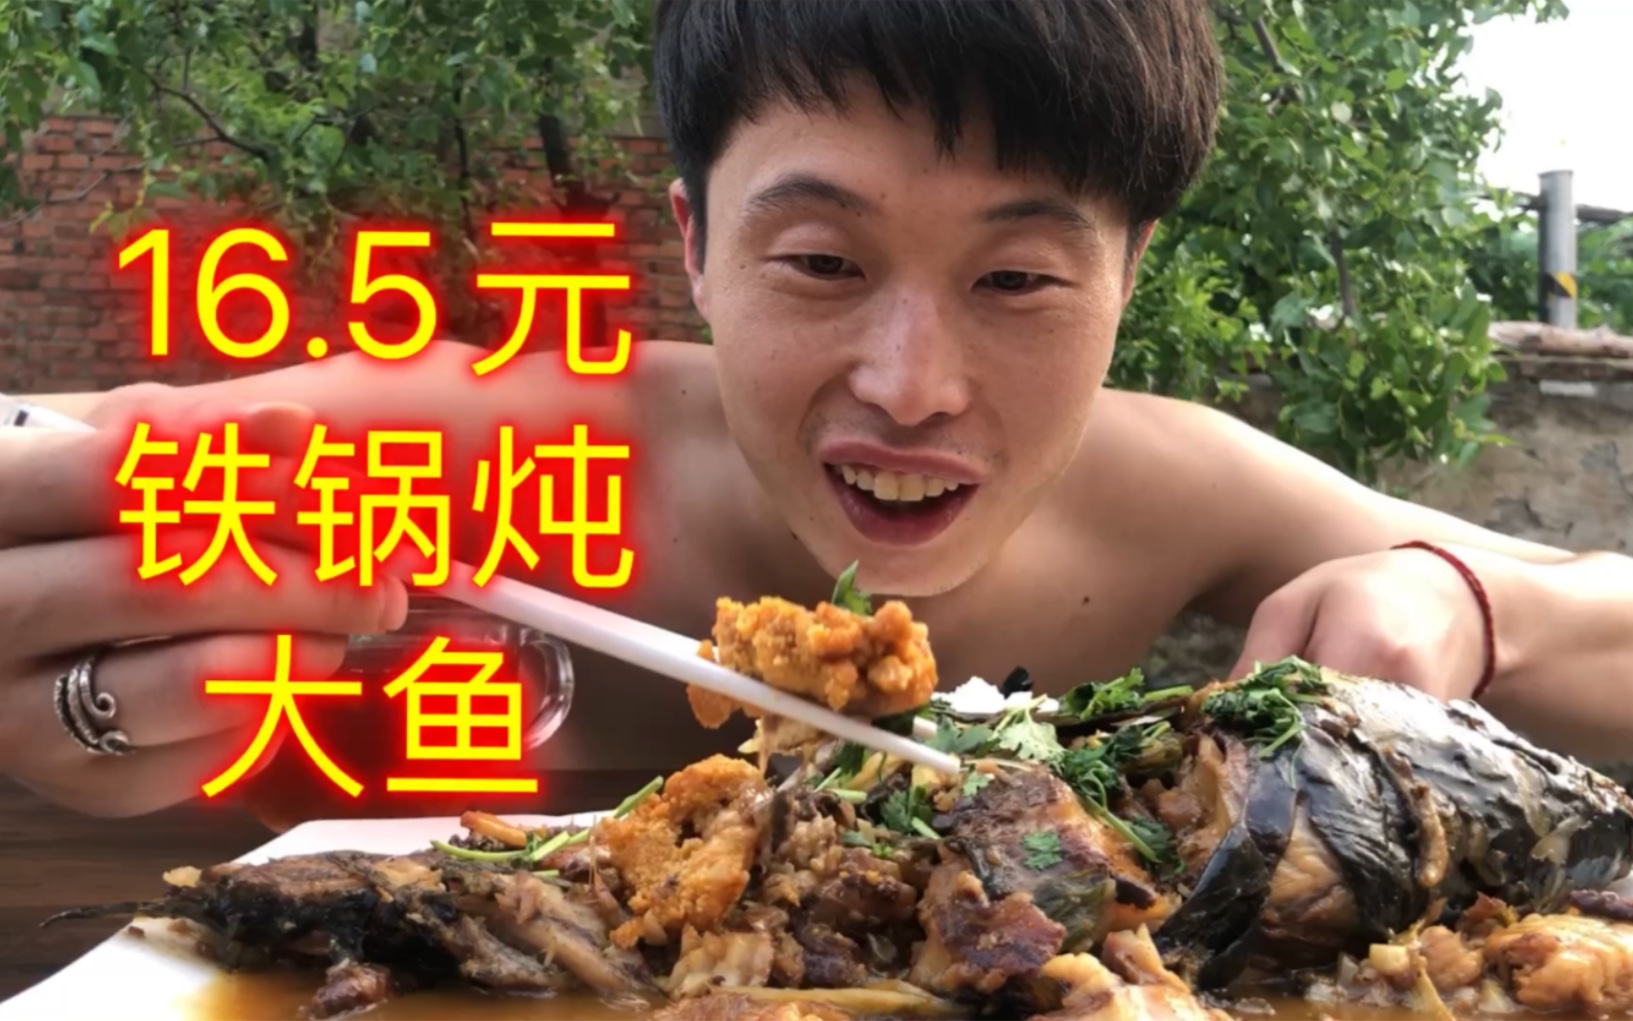 猴哥消费16.5元享受铁锅炖大鱼，虽然收入不高，但是物价低啊